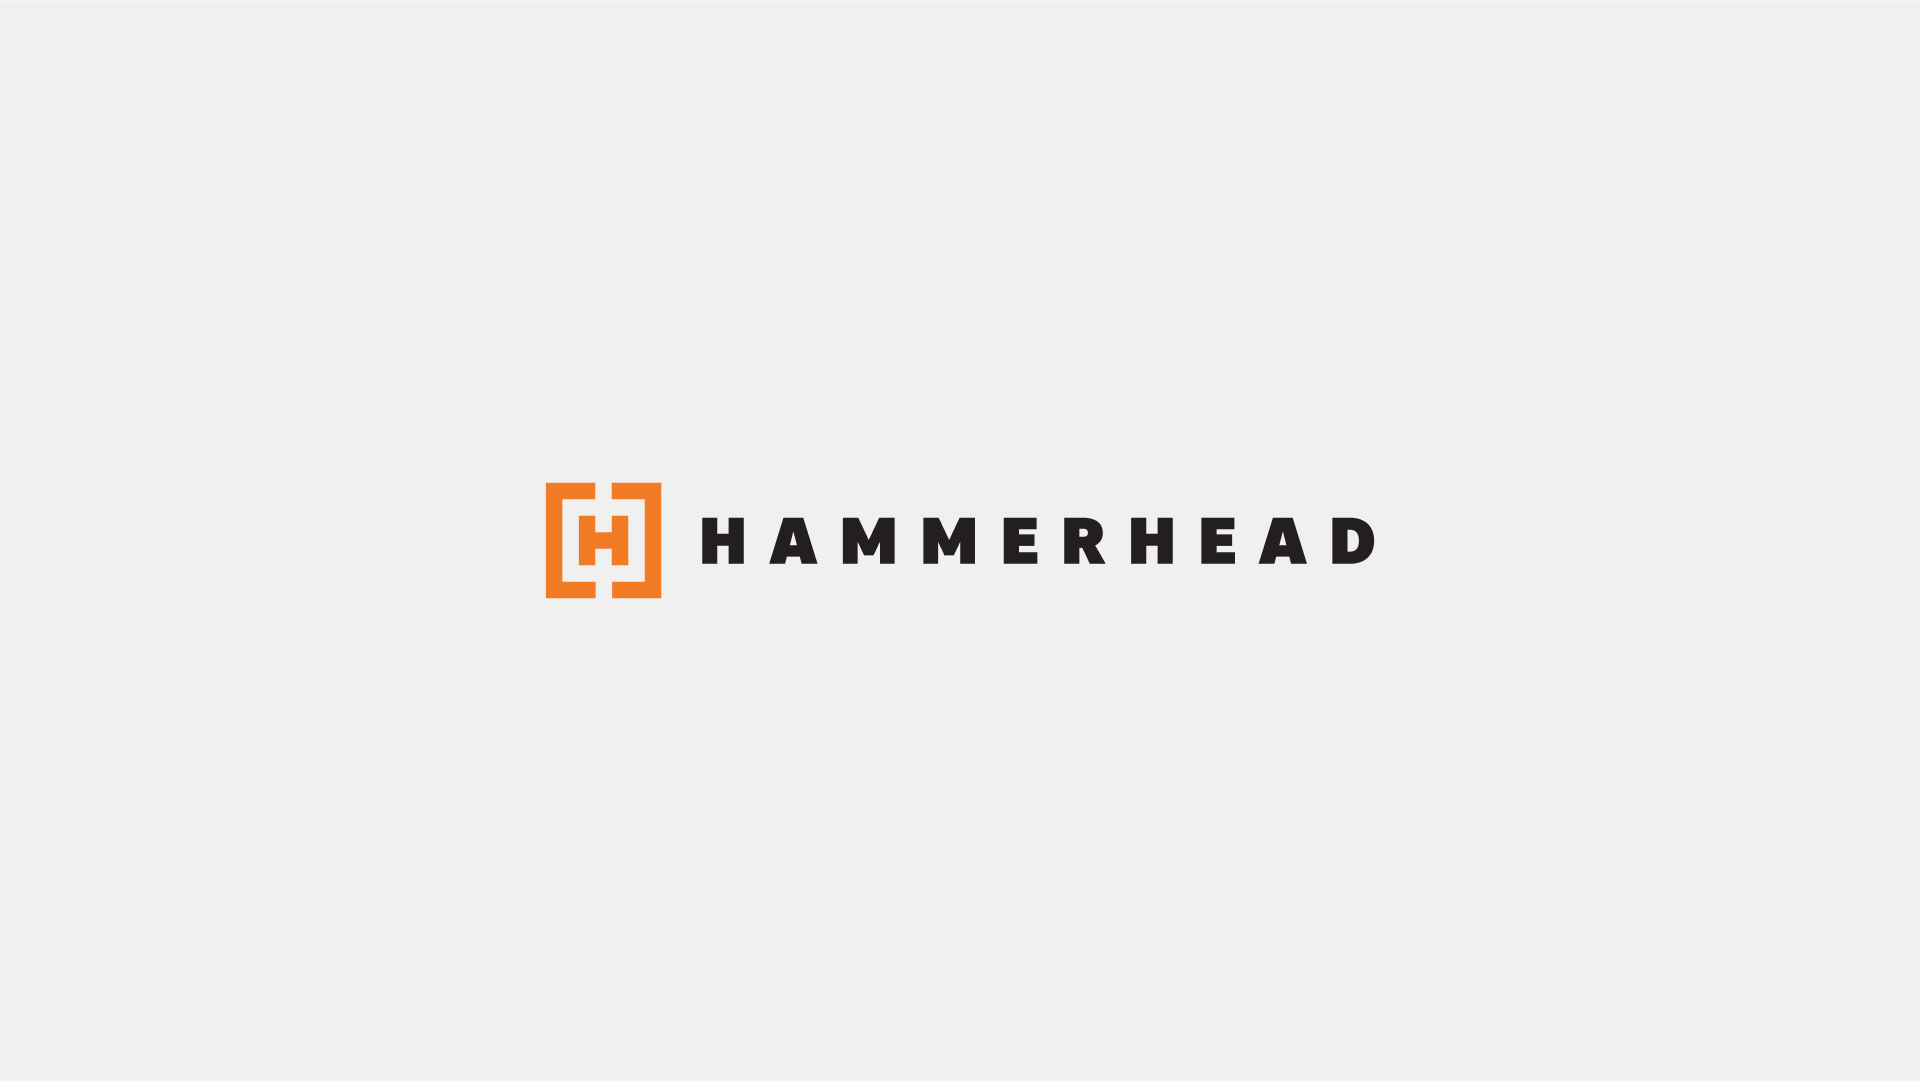 Hammerhead re-bränding